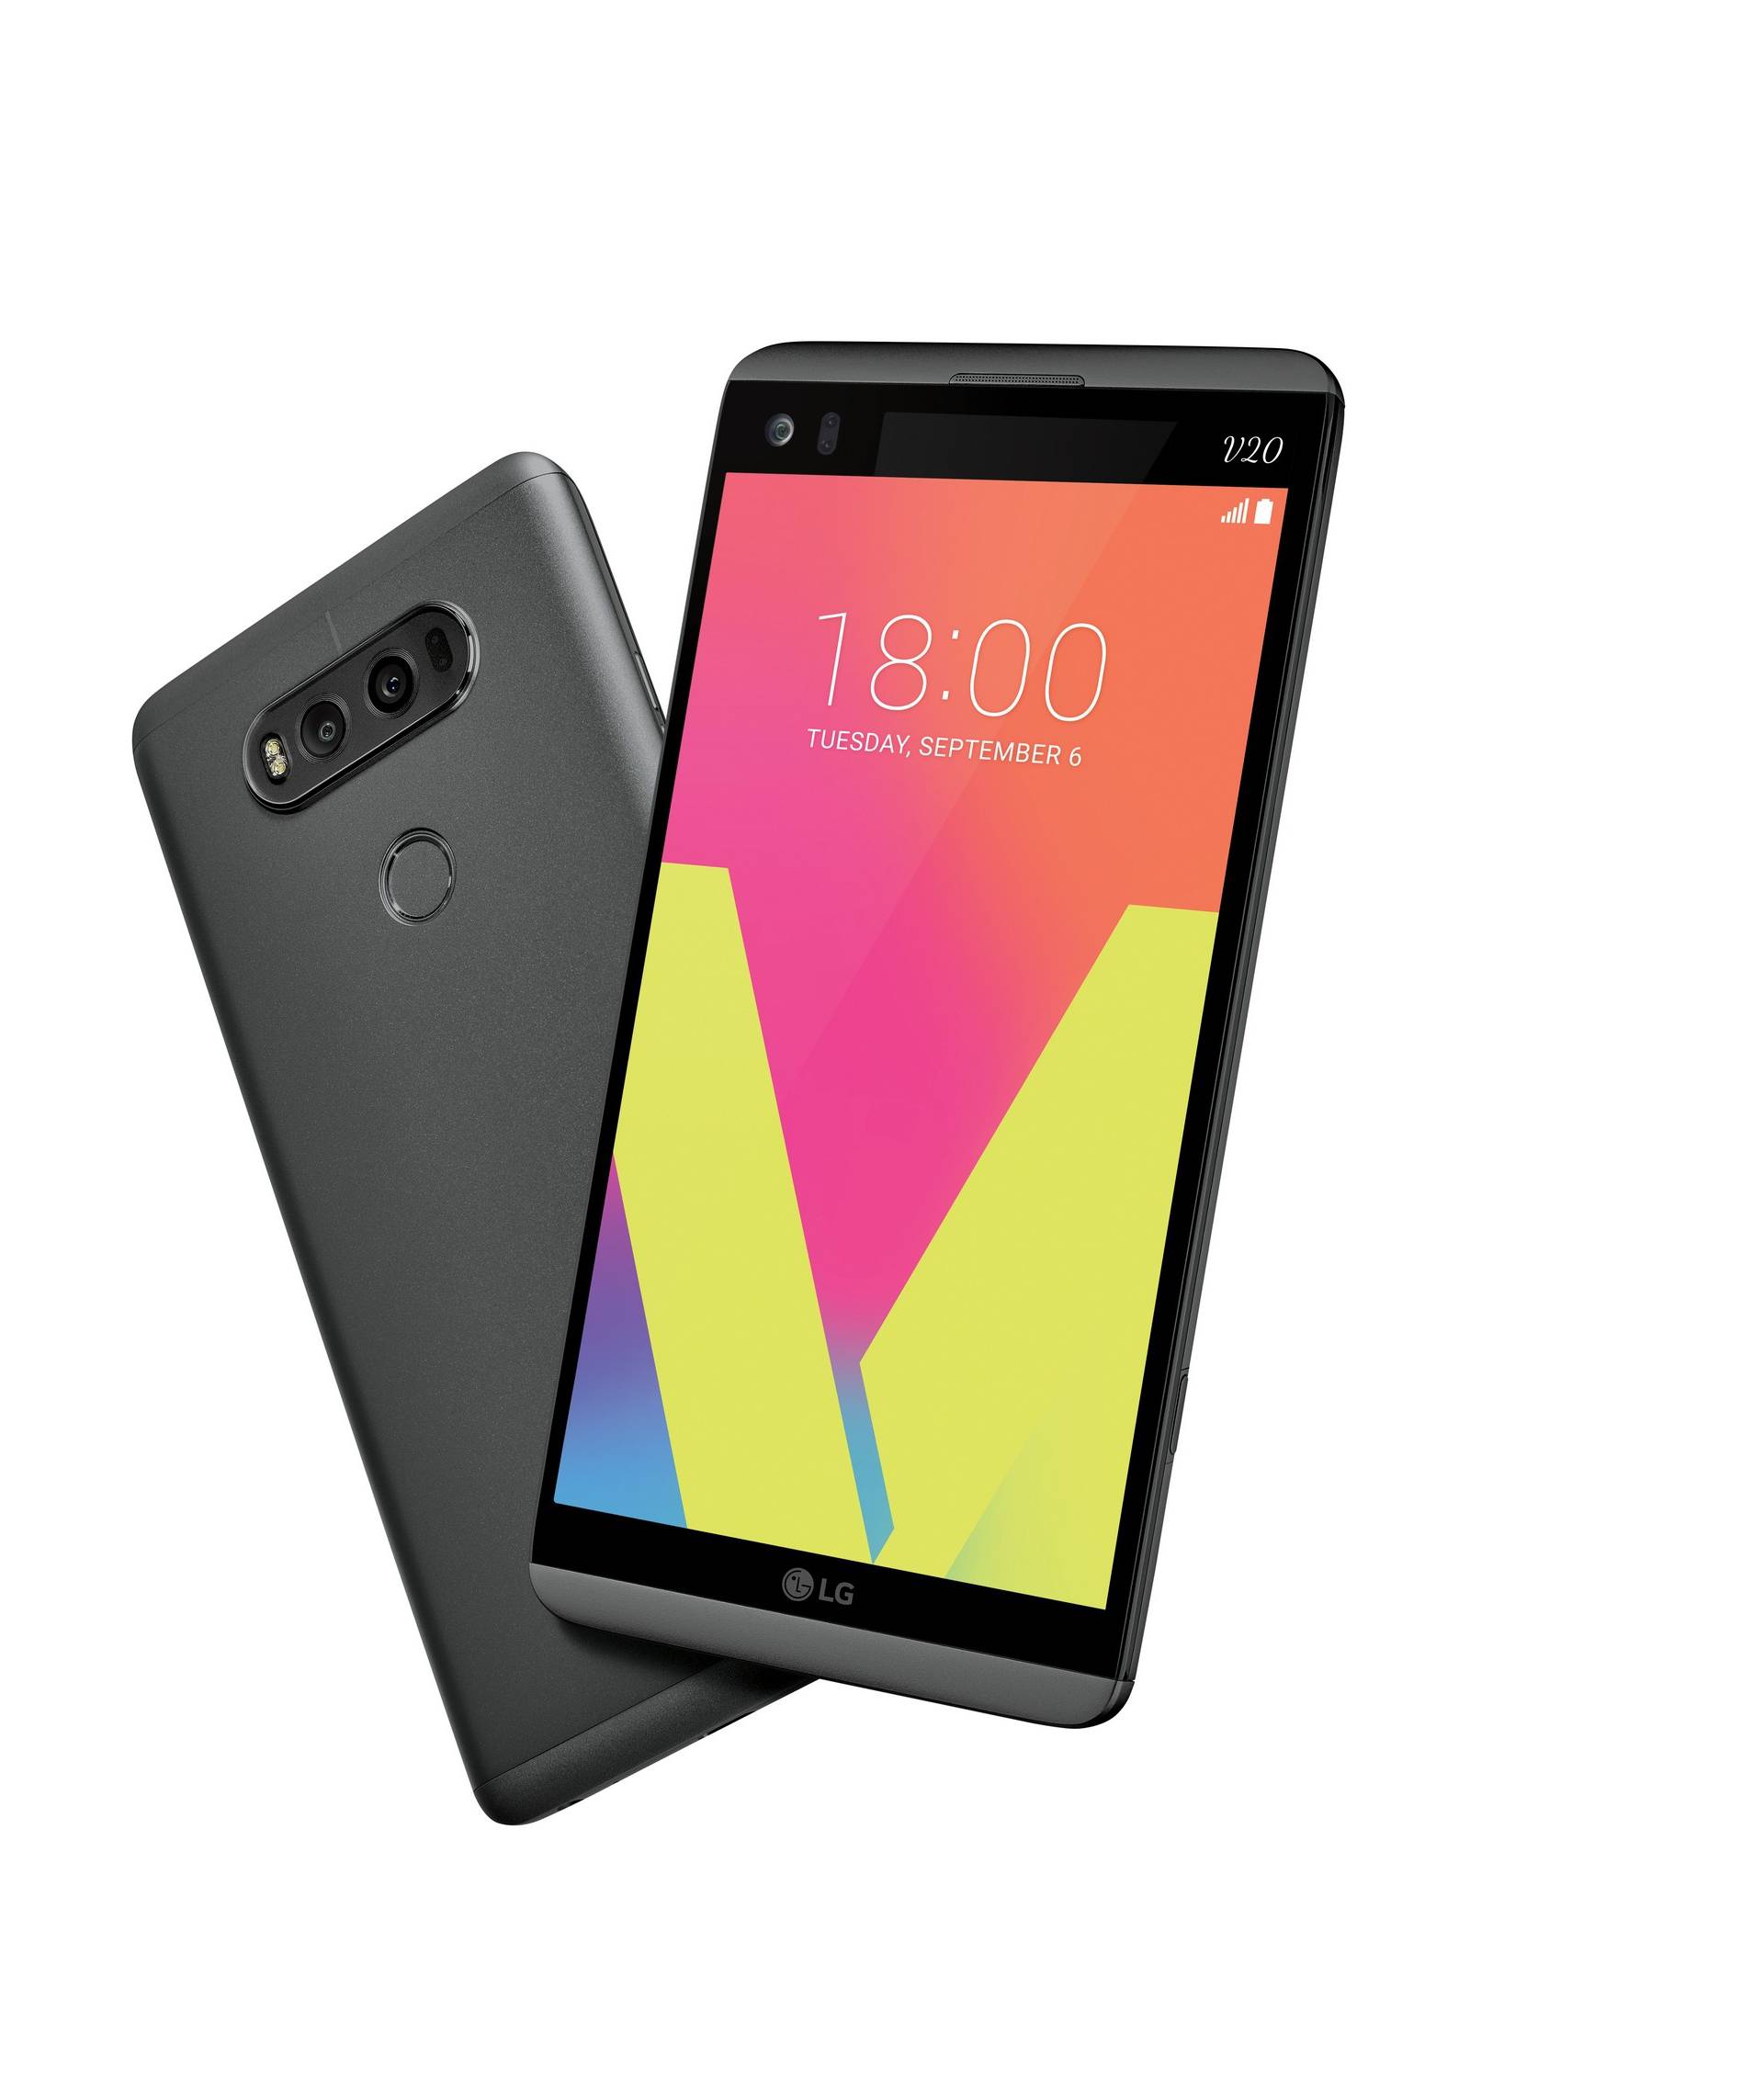 LG ostaje uz modularni dizajn, V20 je prvi telefon s Nougatom